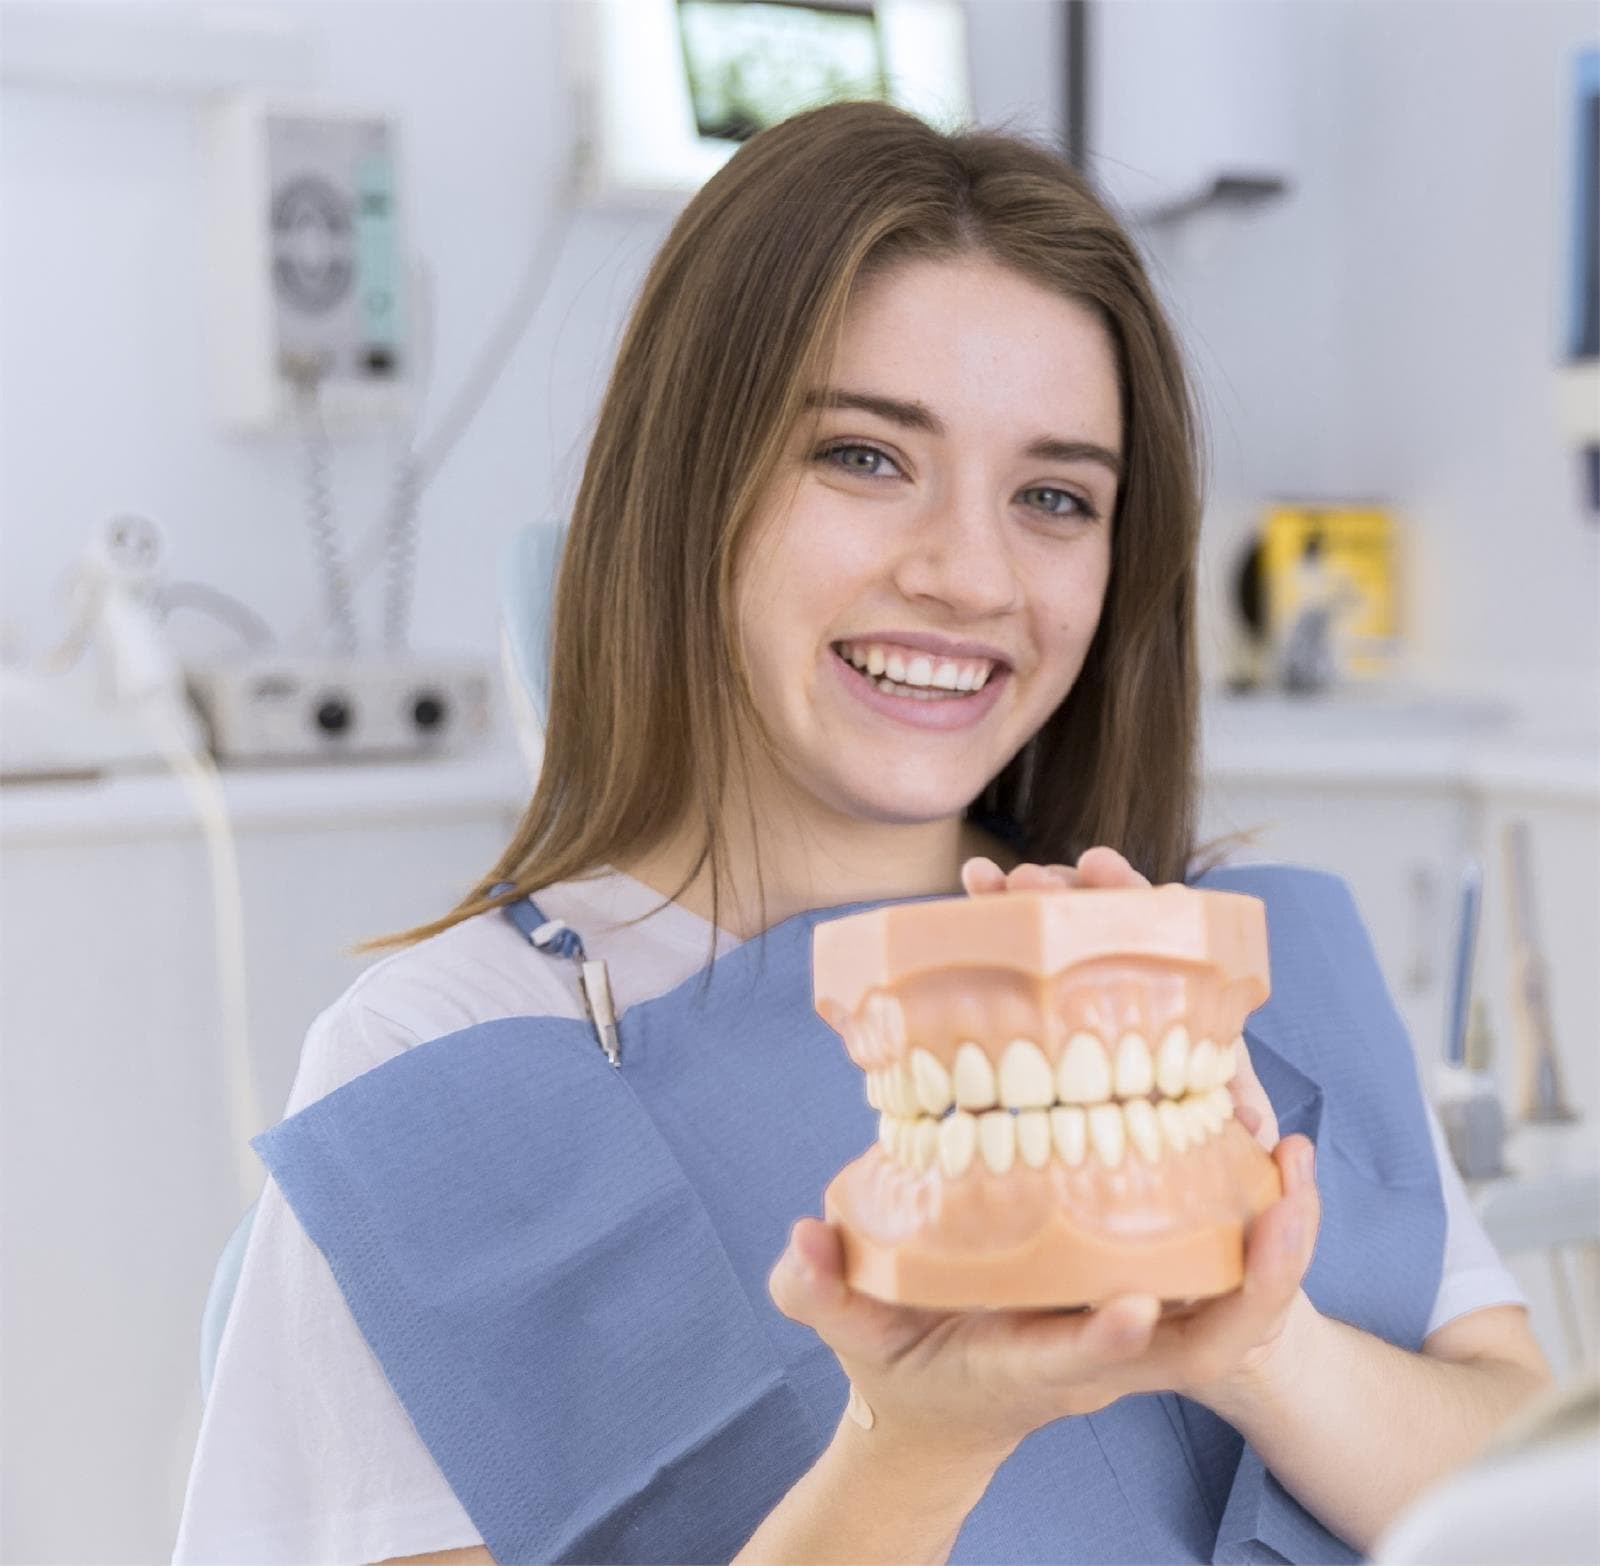 Mitos y curiosidades sobre la ortodoncia - Imagen 1